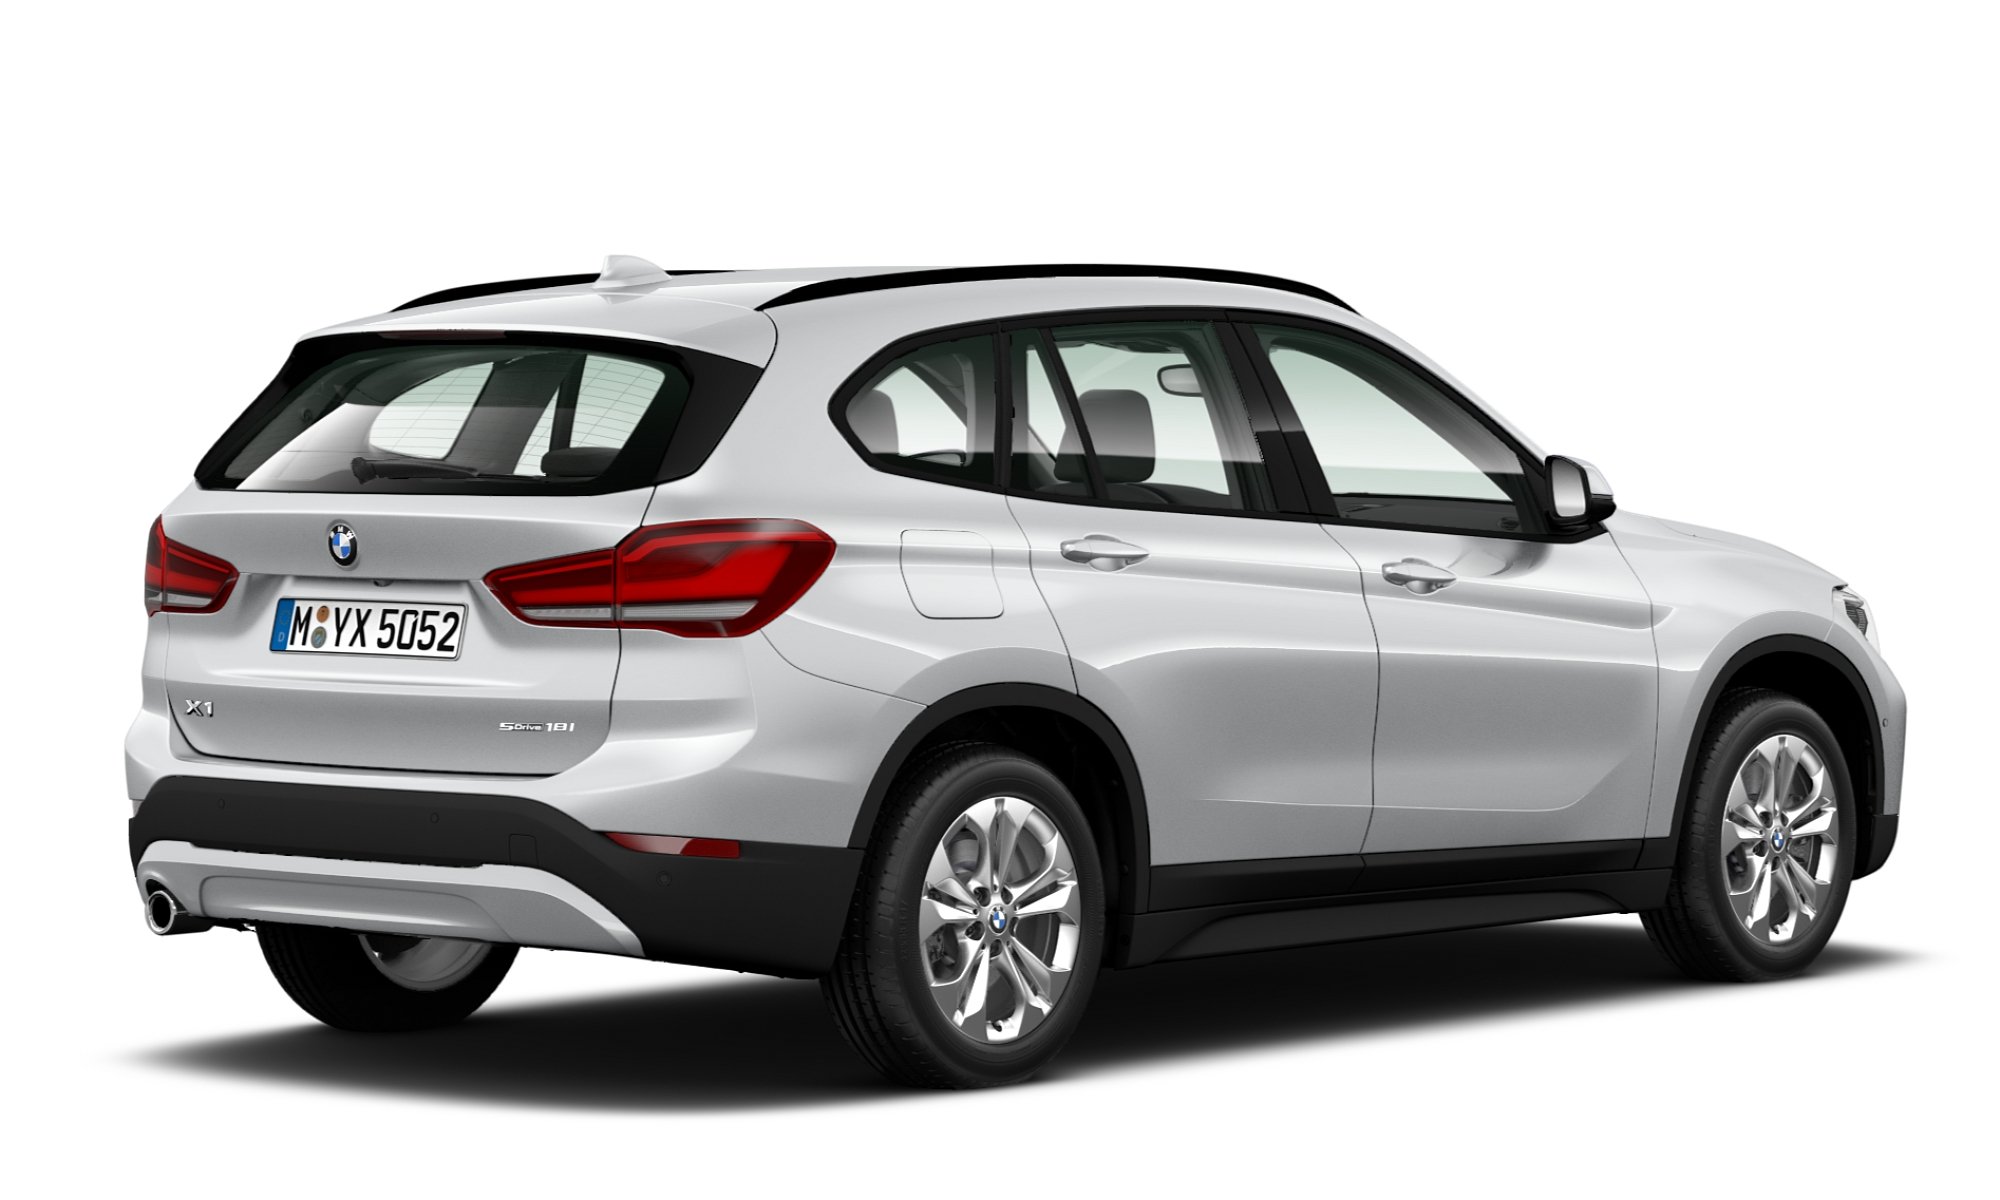 Compra un SUV BMW X1 SDRIVE18I nuevo en línea CrediAuto en Línea